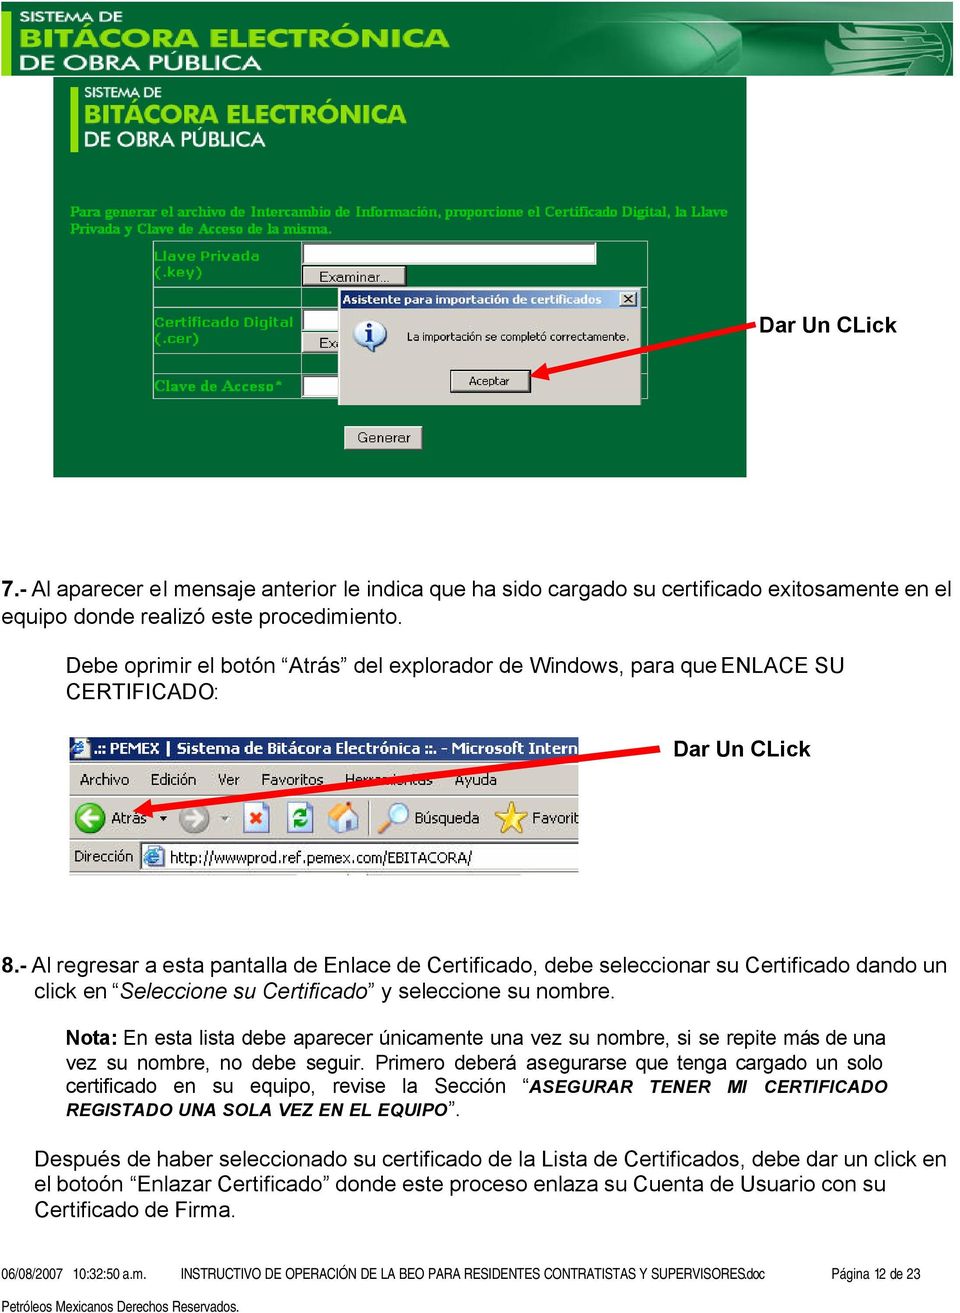 - Al regresar a esta pantalla de Enlace de Certificado, debe seleccionar su Certificado dando un click en Seleccione su Certificado y seleccione su nombre.